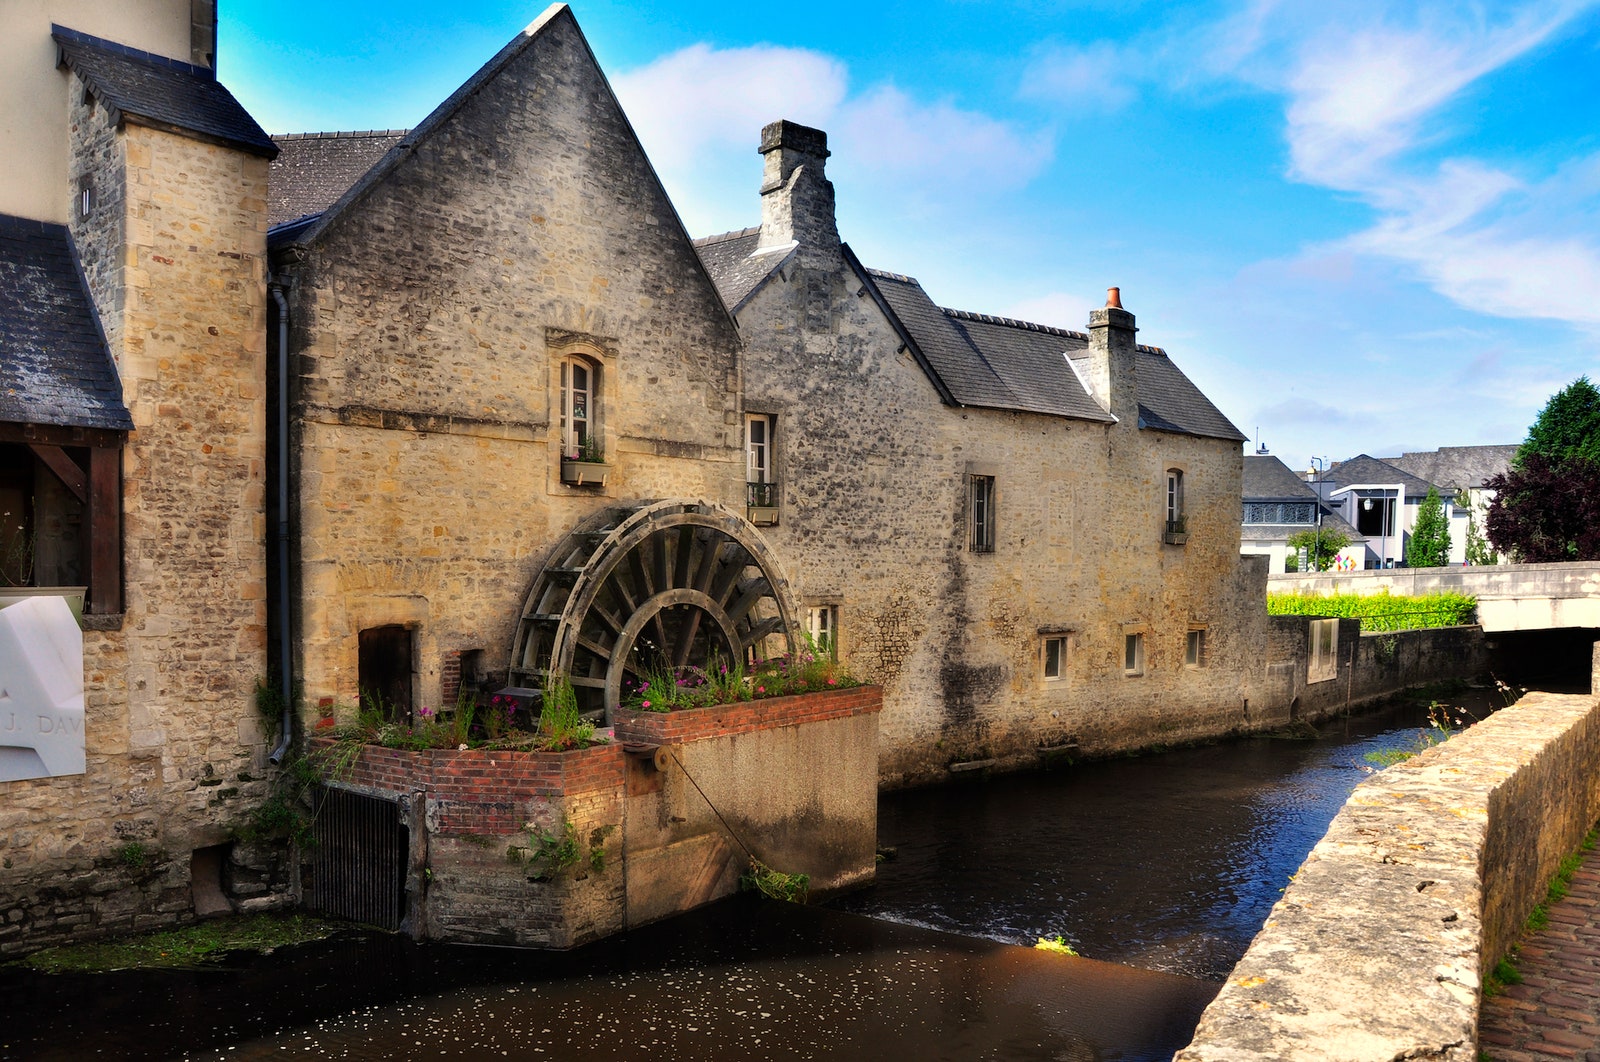 10 самых красивых маленьких городов Франции